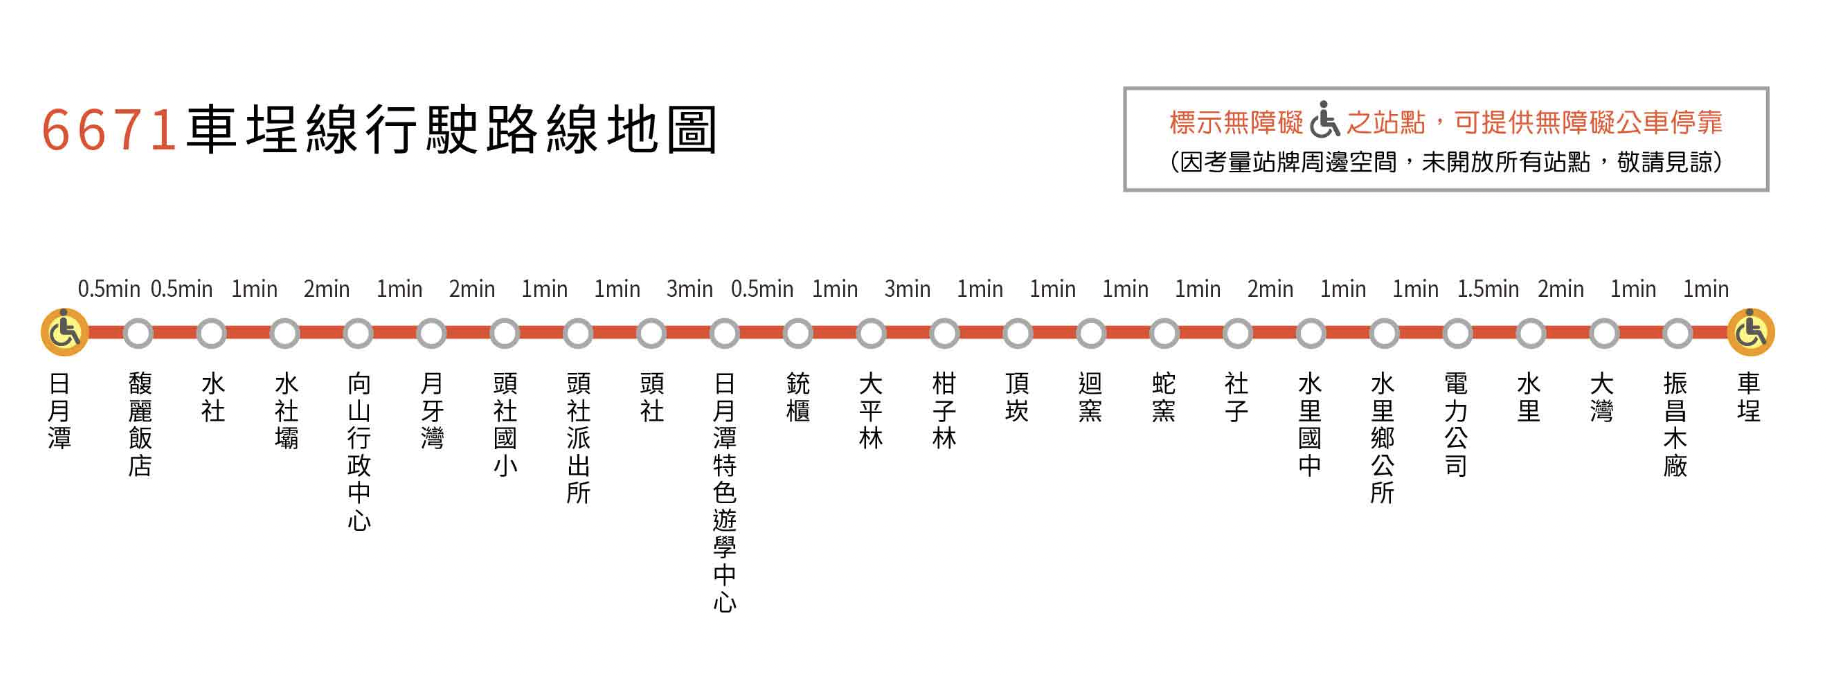  6671 ( 台灣好行－車埕線 ) 路線圖